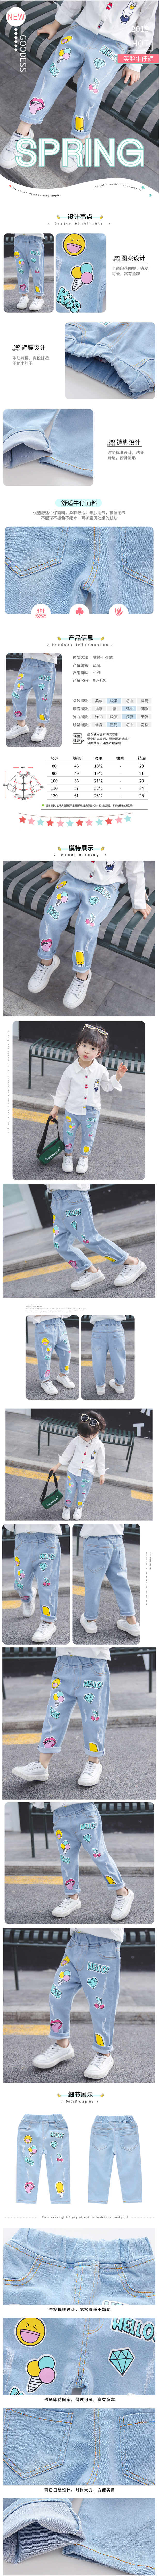 淘宝美工y1891382019新款女童牛仔裤秋装韩版超洋气作品